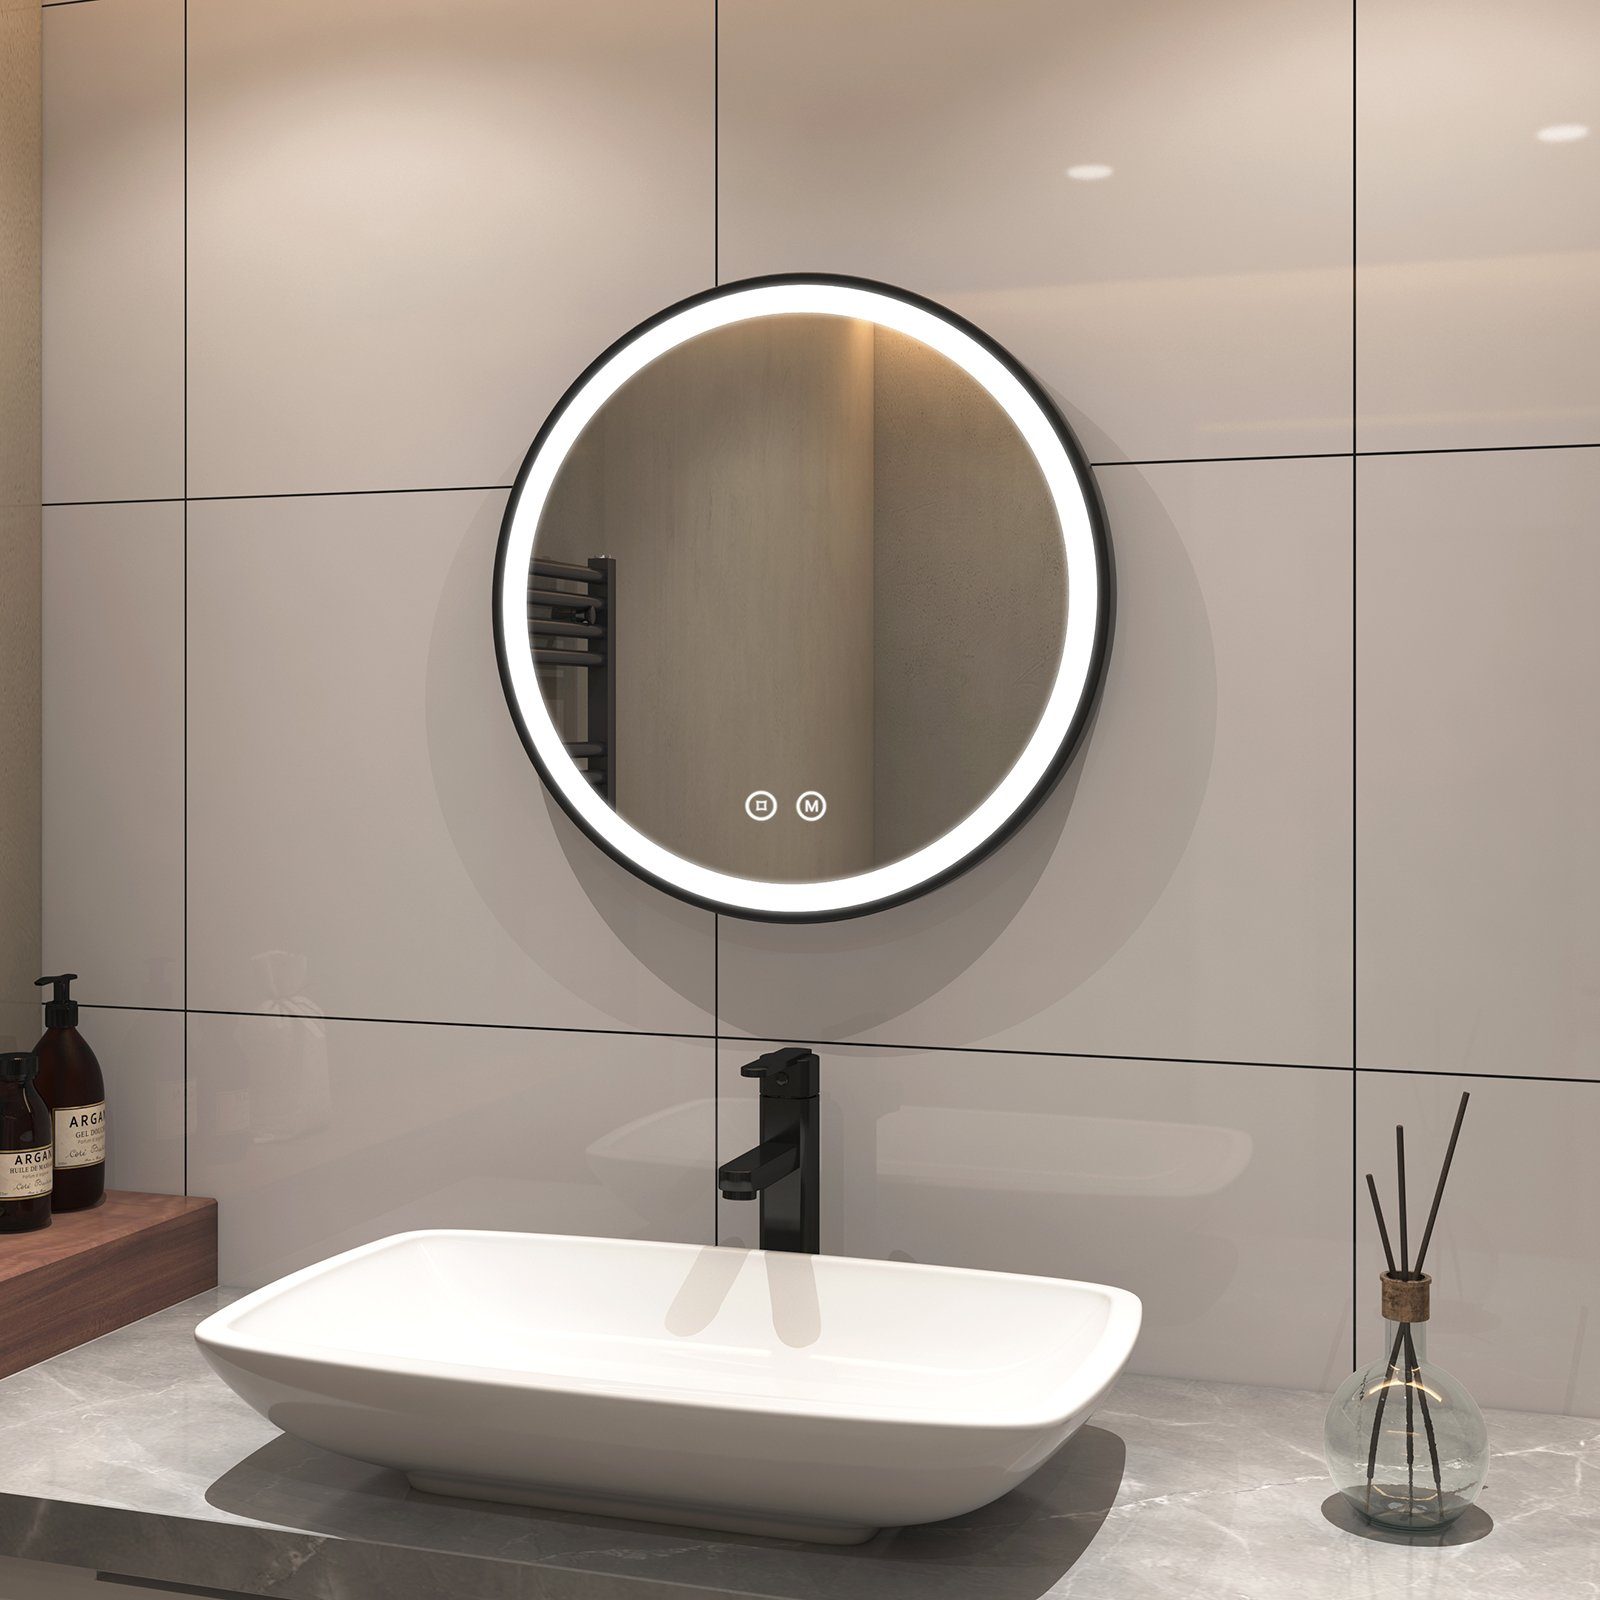 S'AFIELINA Badspiegel Badspiegel mit Beleuchtung Runder Badezimmerspiegel, Touch-Schalter,3000/4000/6500K Lichtfarbe,Energiesparend,IP44